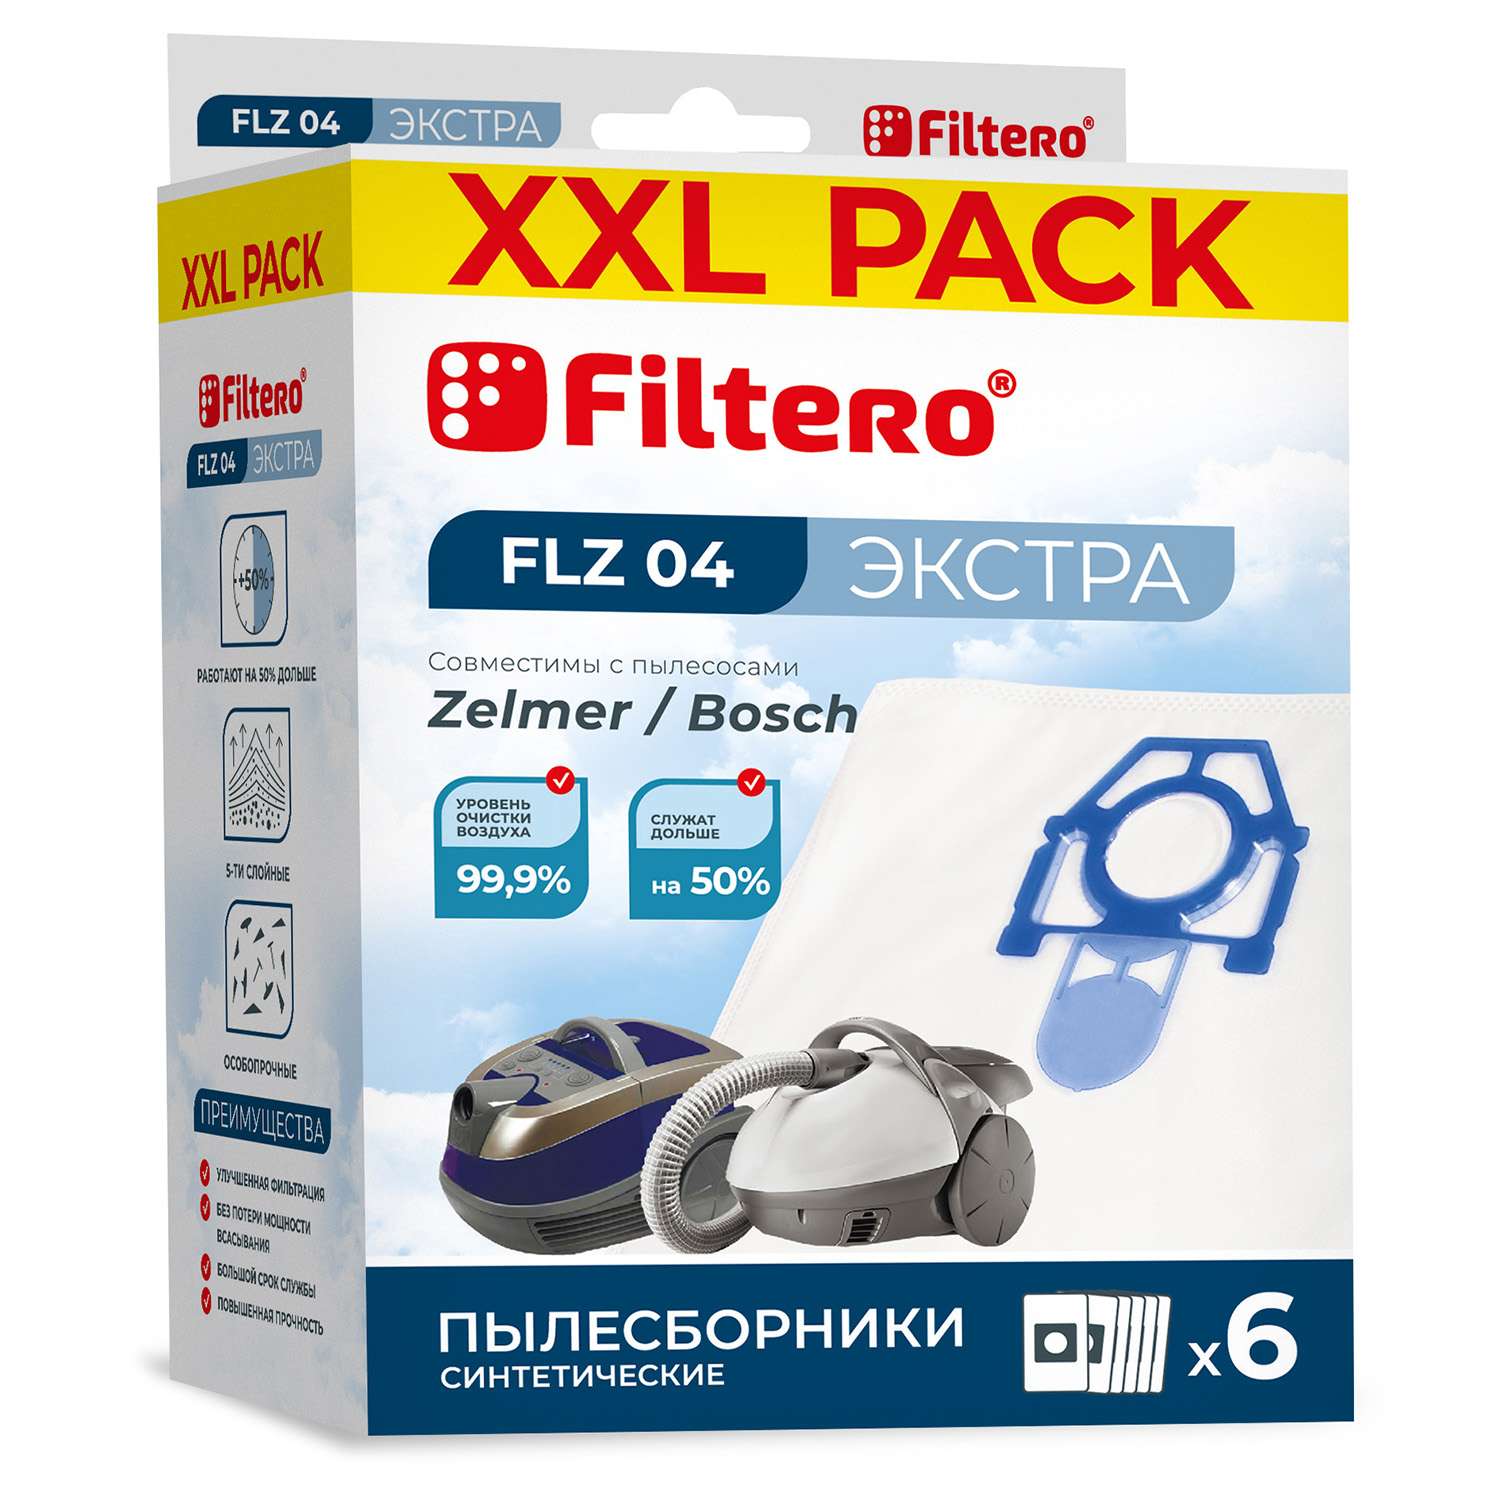 Пылесборники Filtero FLZ 04 синтетические XXL Pack Экстра 6 шт - фото 1